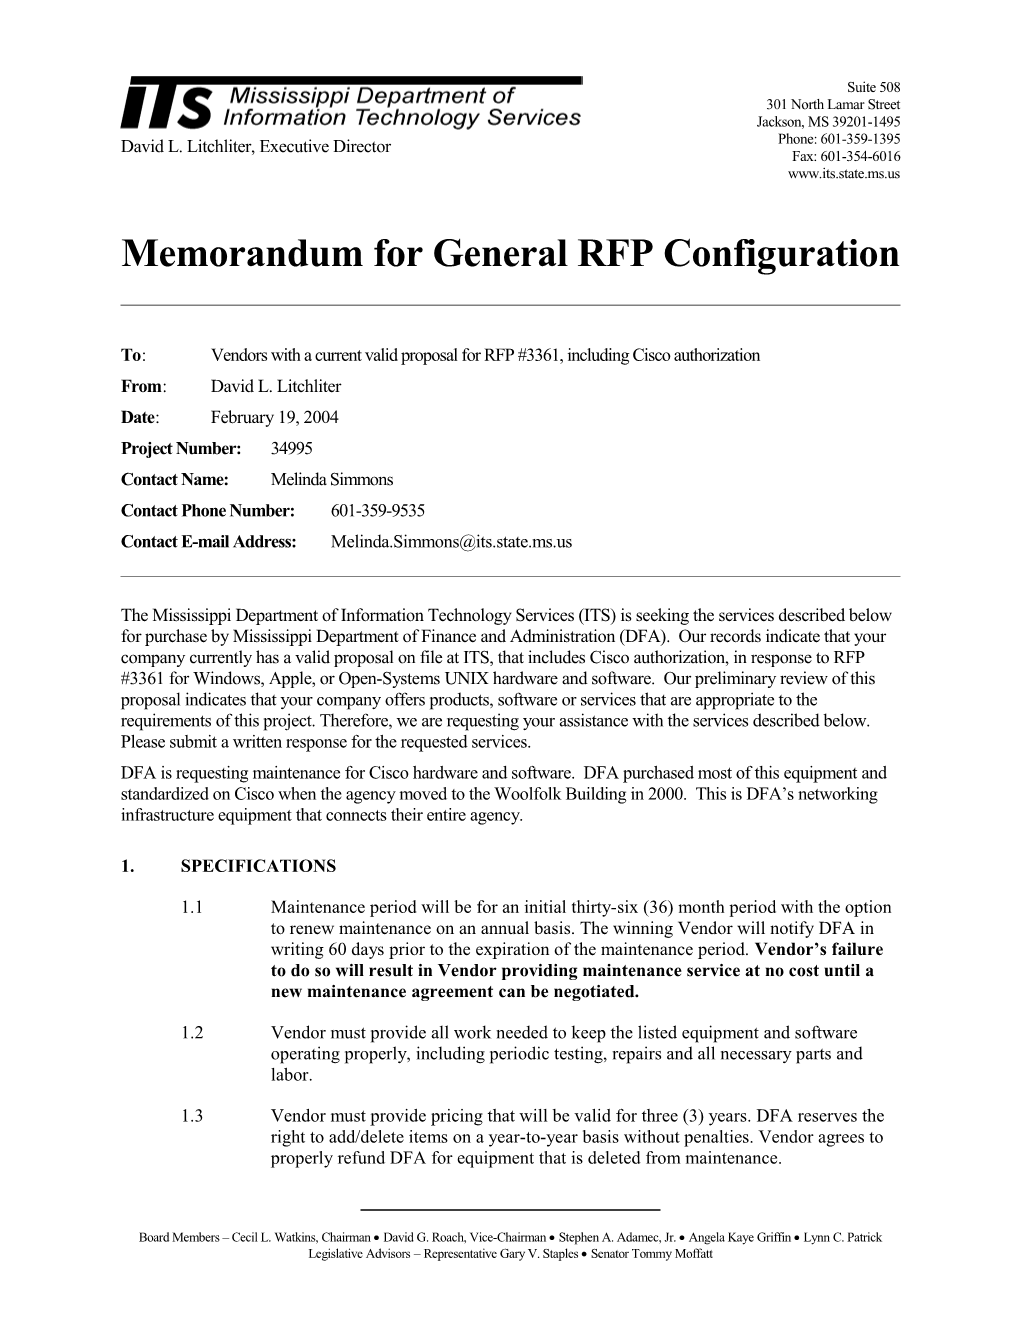 Memorandum for General RFP Configuration s6